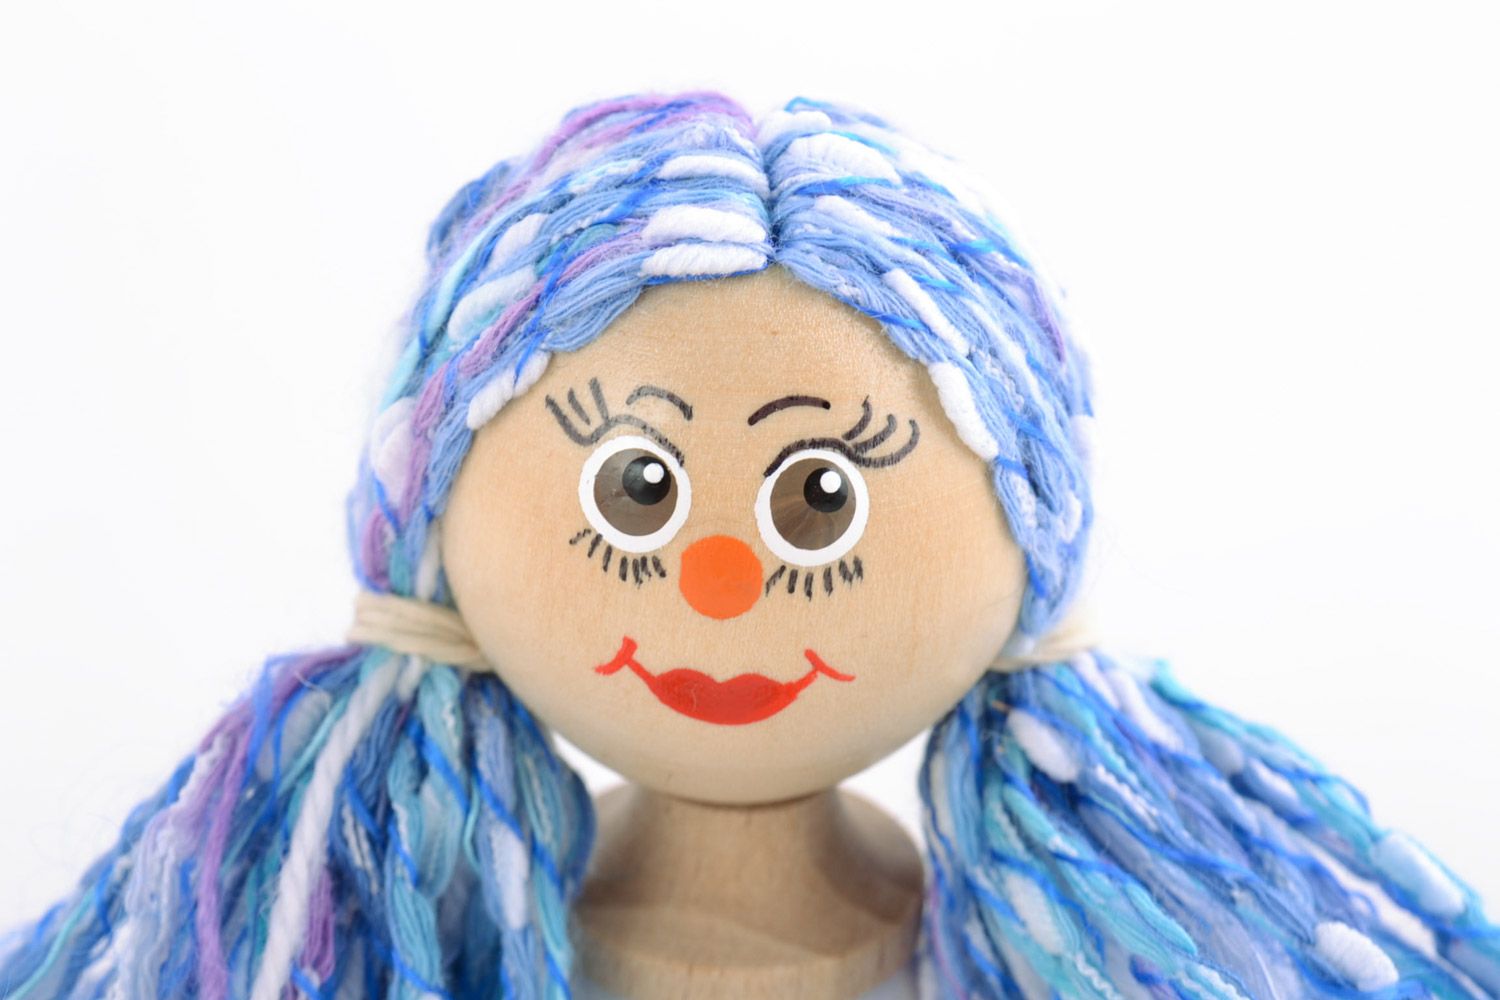 Öko Spielzeug aus Holz handmade umweltfreundlich künstlerisch Mädchen mit blauem Haar foto 3